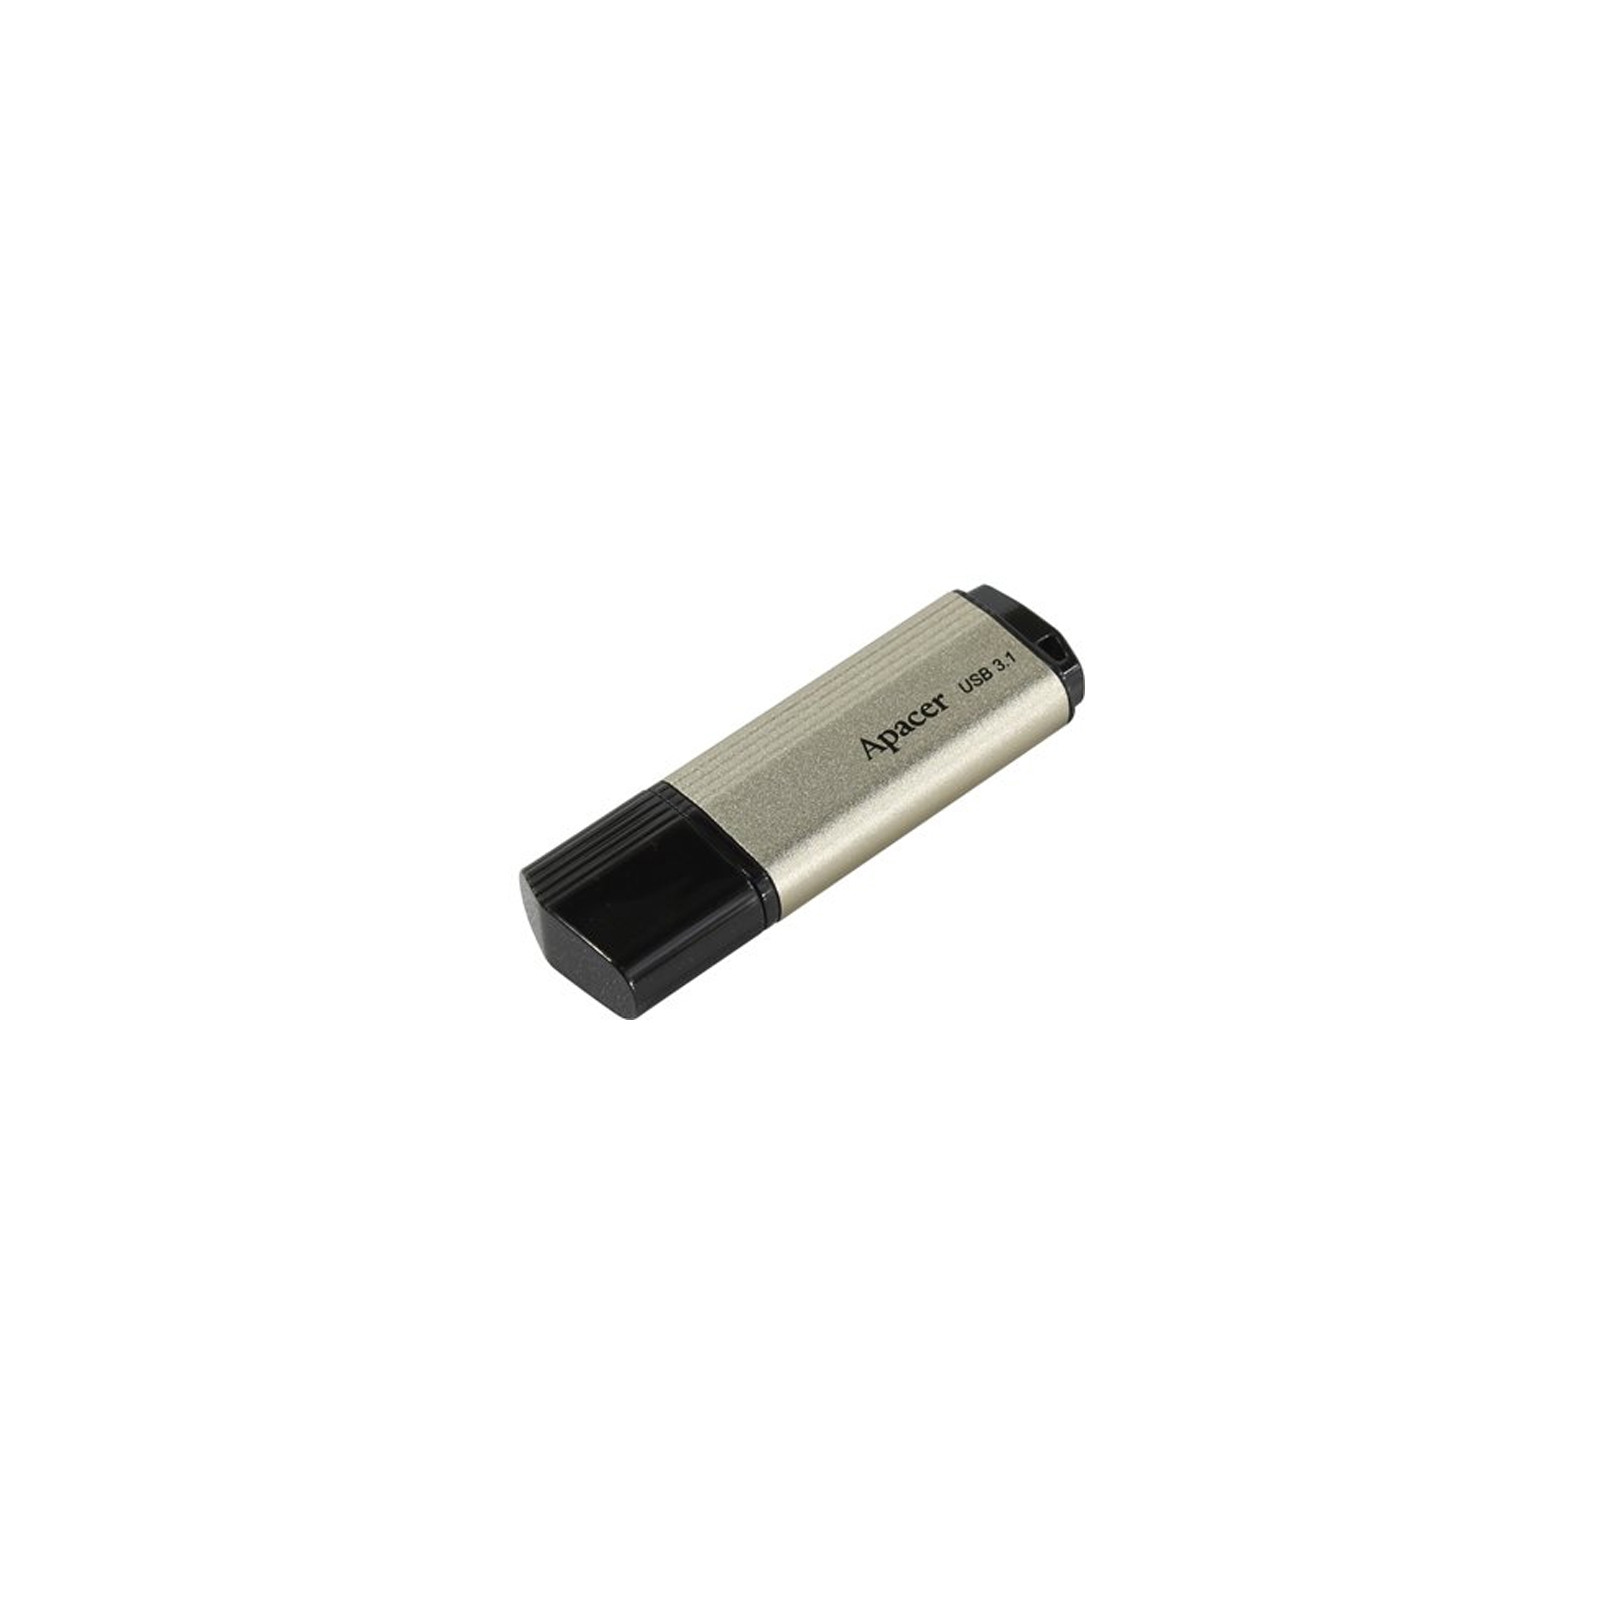 USB флеш накопитель Apacer 8GB AH353 Champagne Gold RP USB3.0 (AP8GAH353C-1) изображение 6